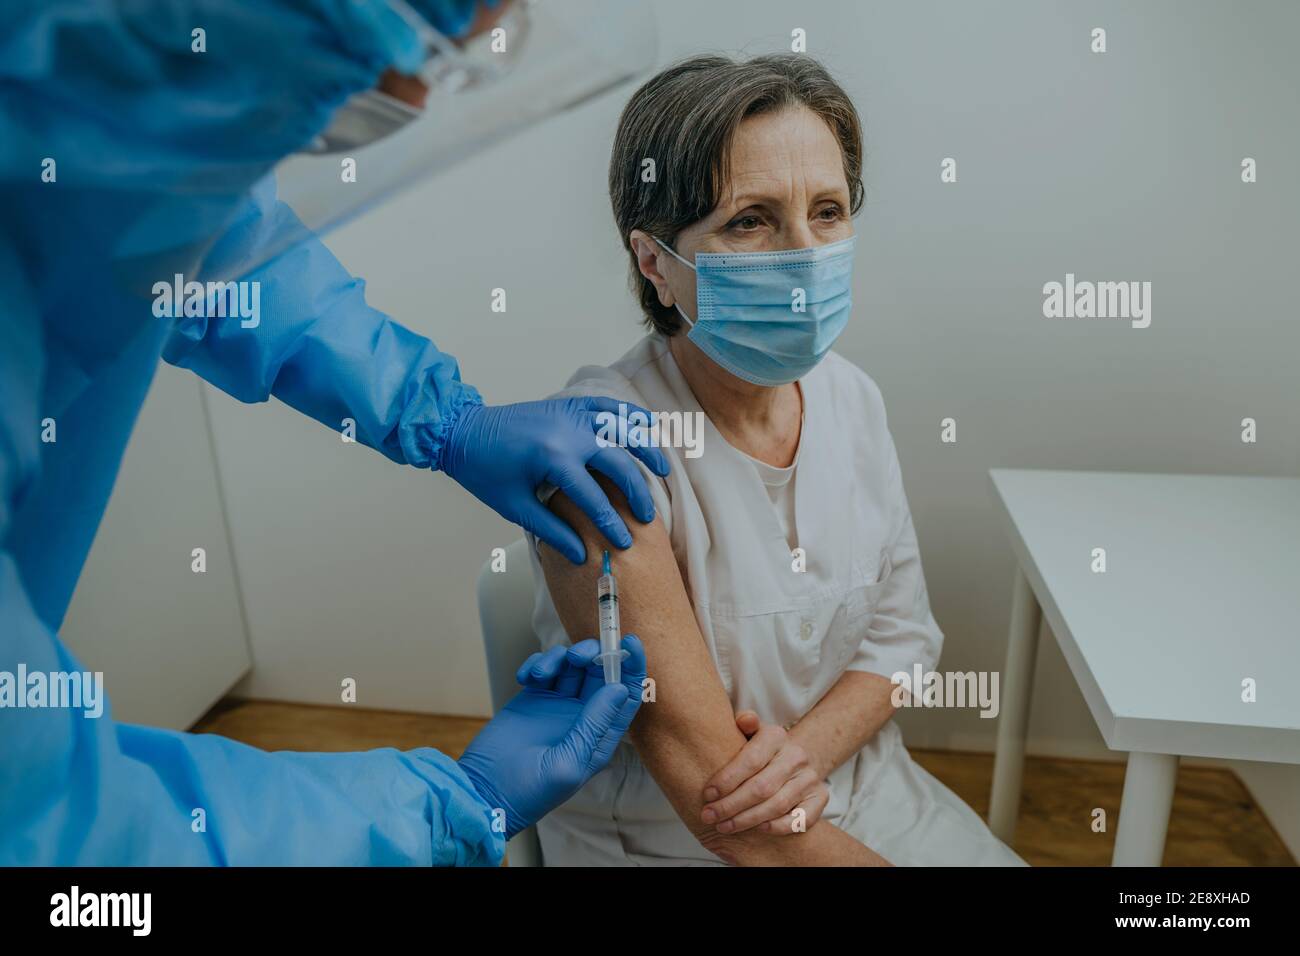 Médecin dans l'ensemble de protection et les gants faisant la vaccination COVID-19 Banque D'Images